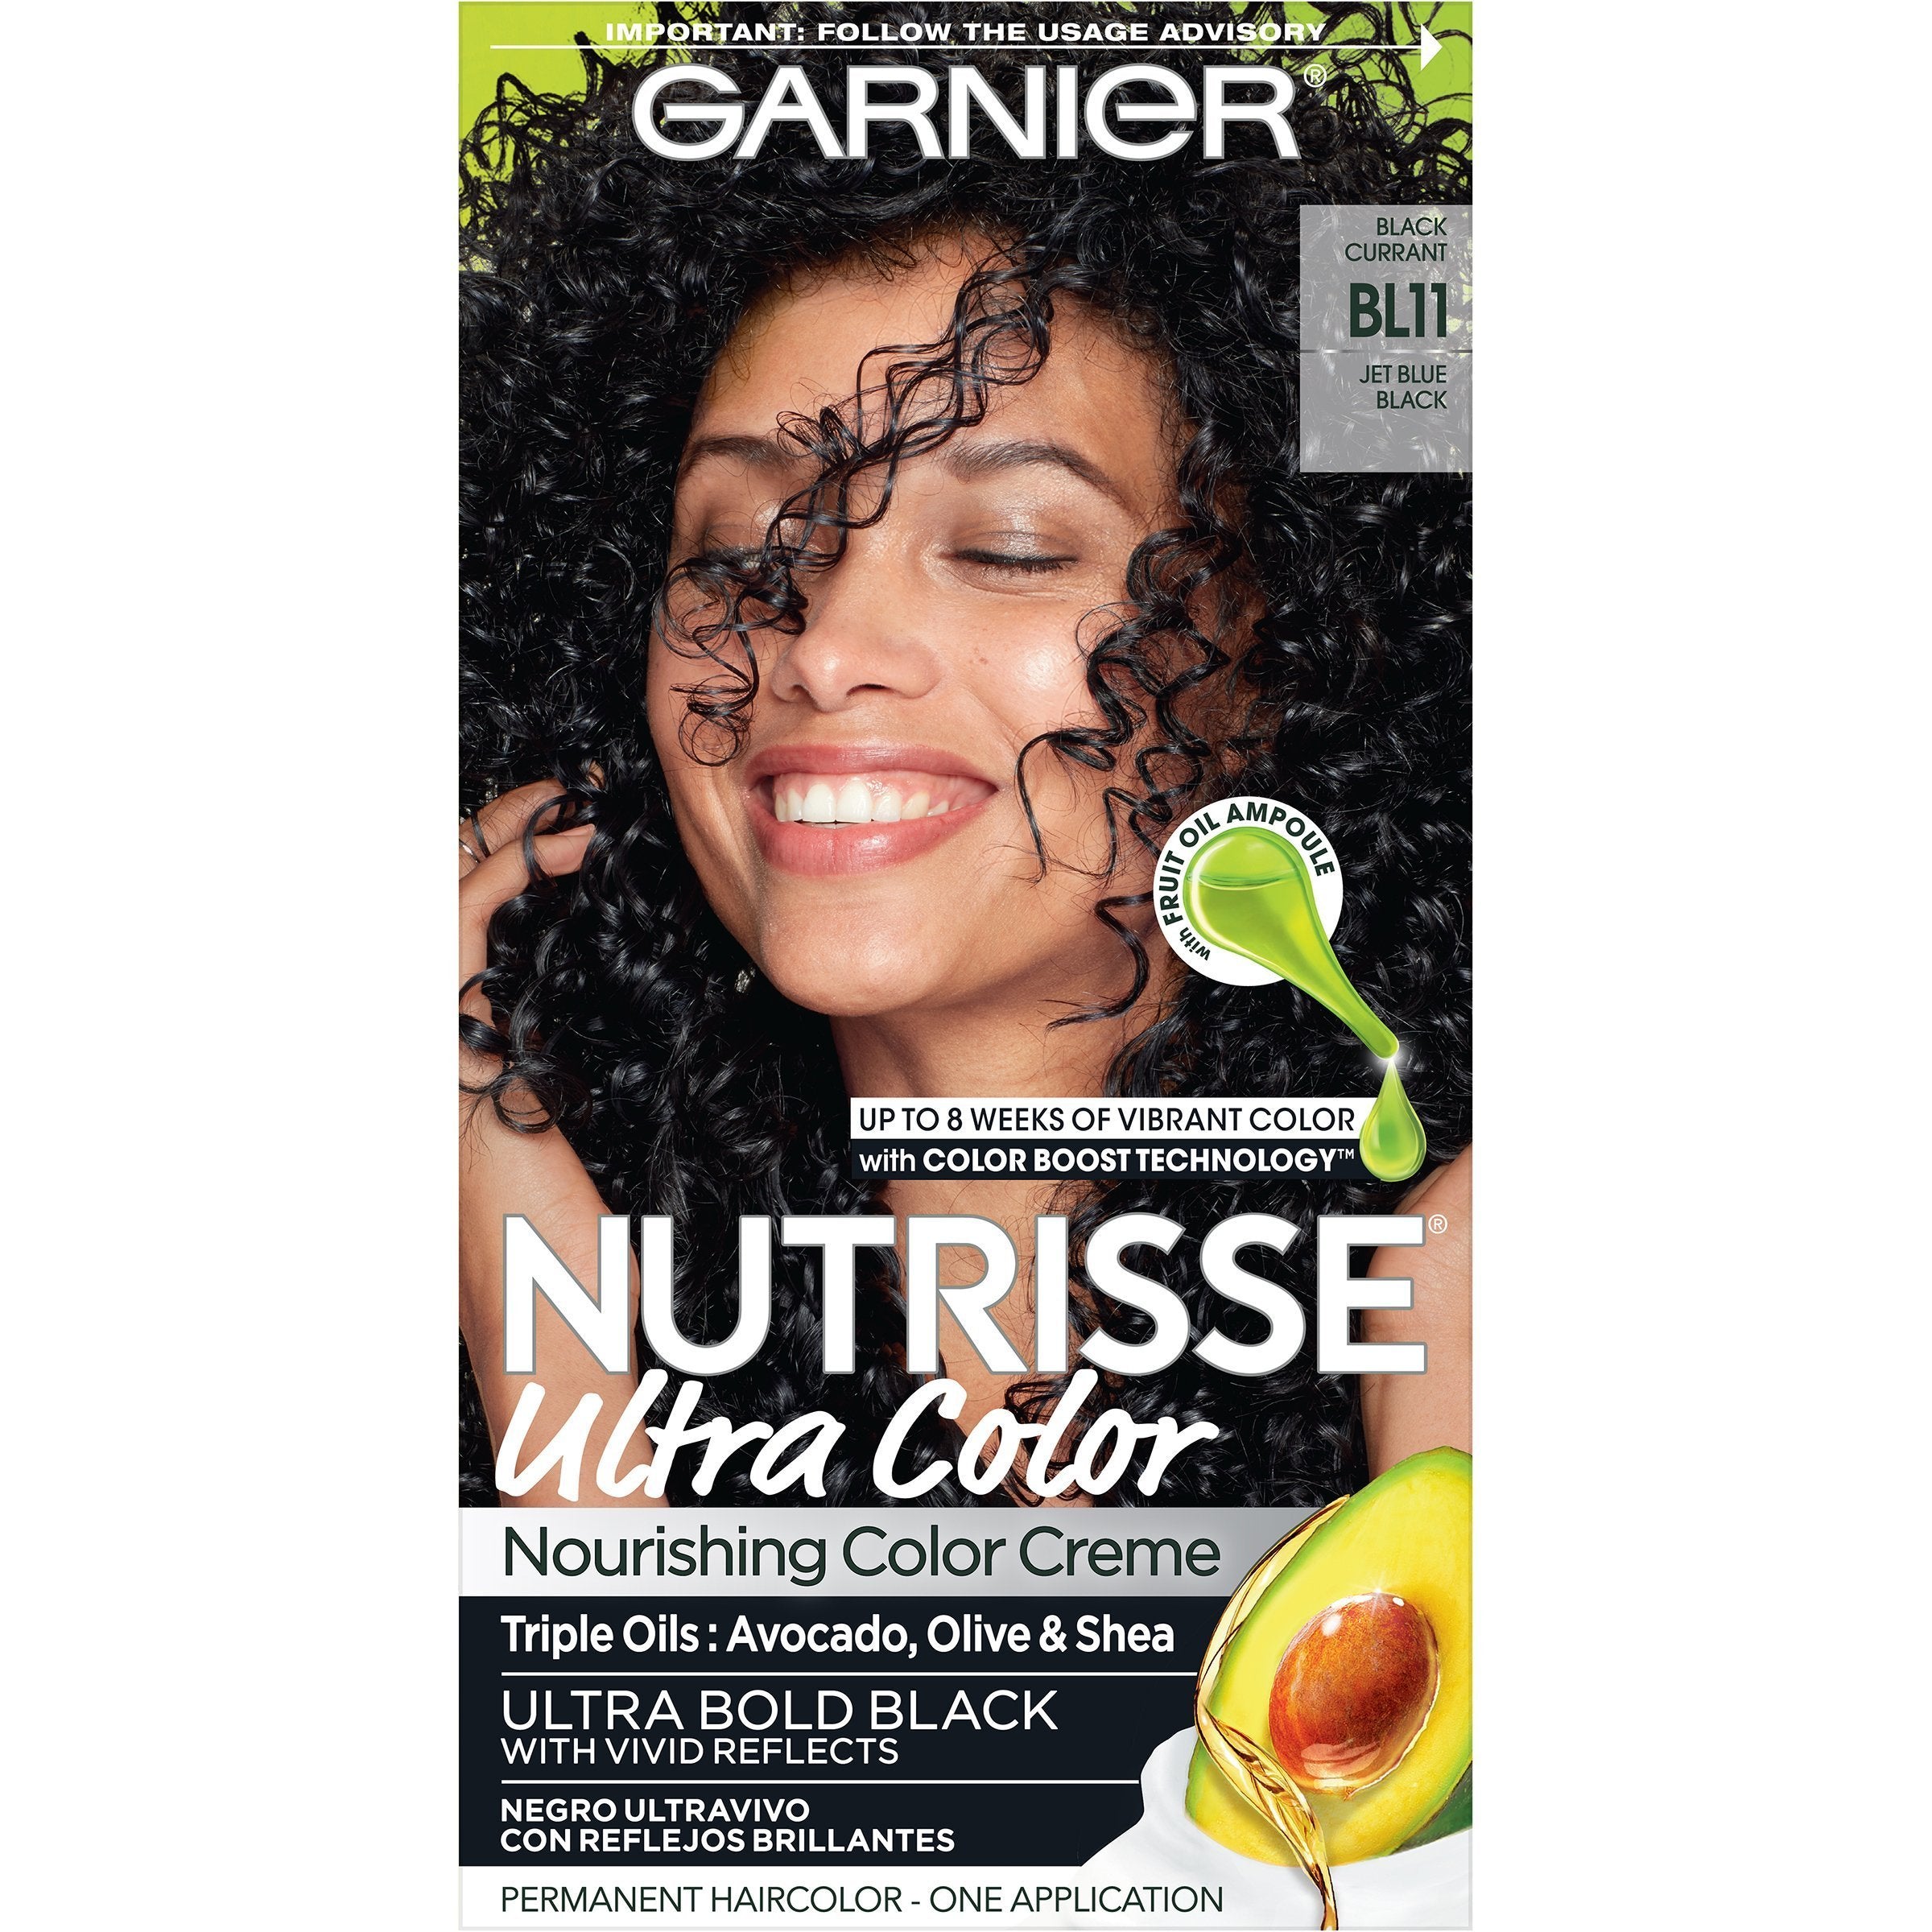 Garnier Nutrisse Ultra Color Nourishing Hair Color Creme, BL11 Jet Blue Black, 1 kit-CaribOnline